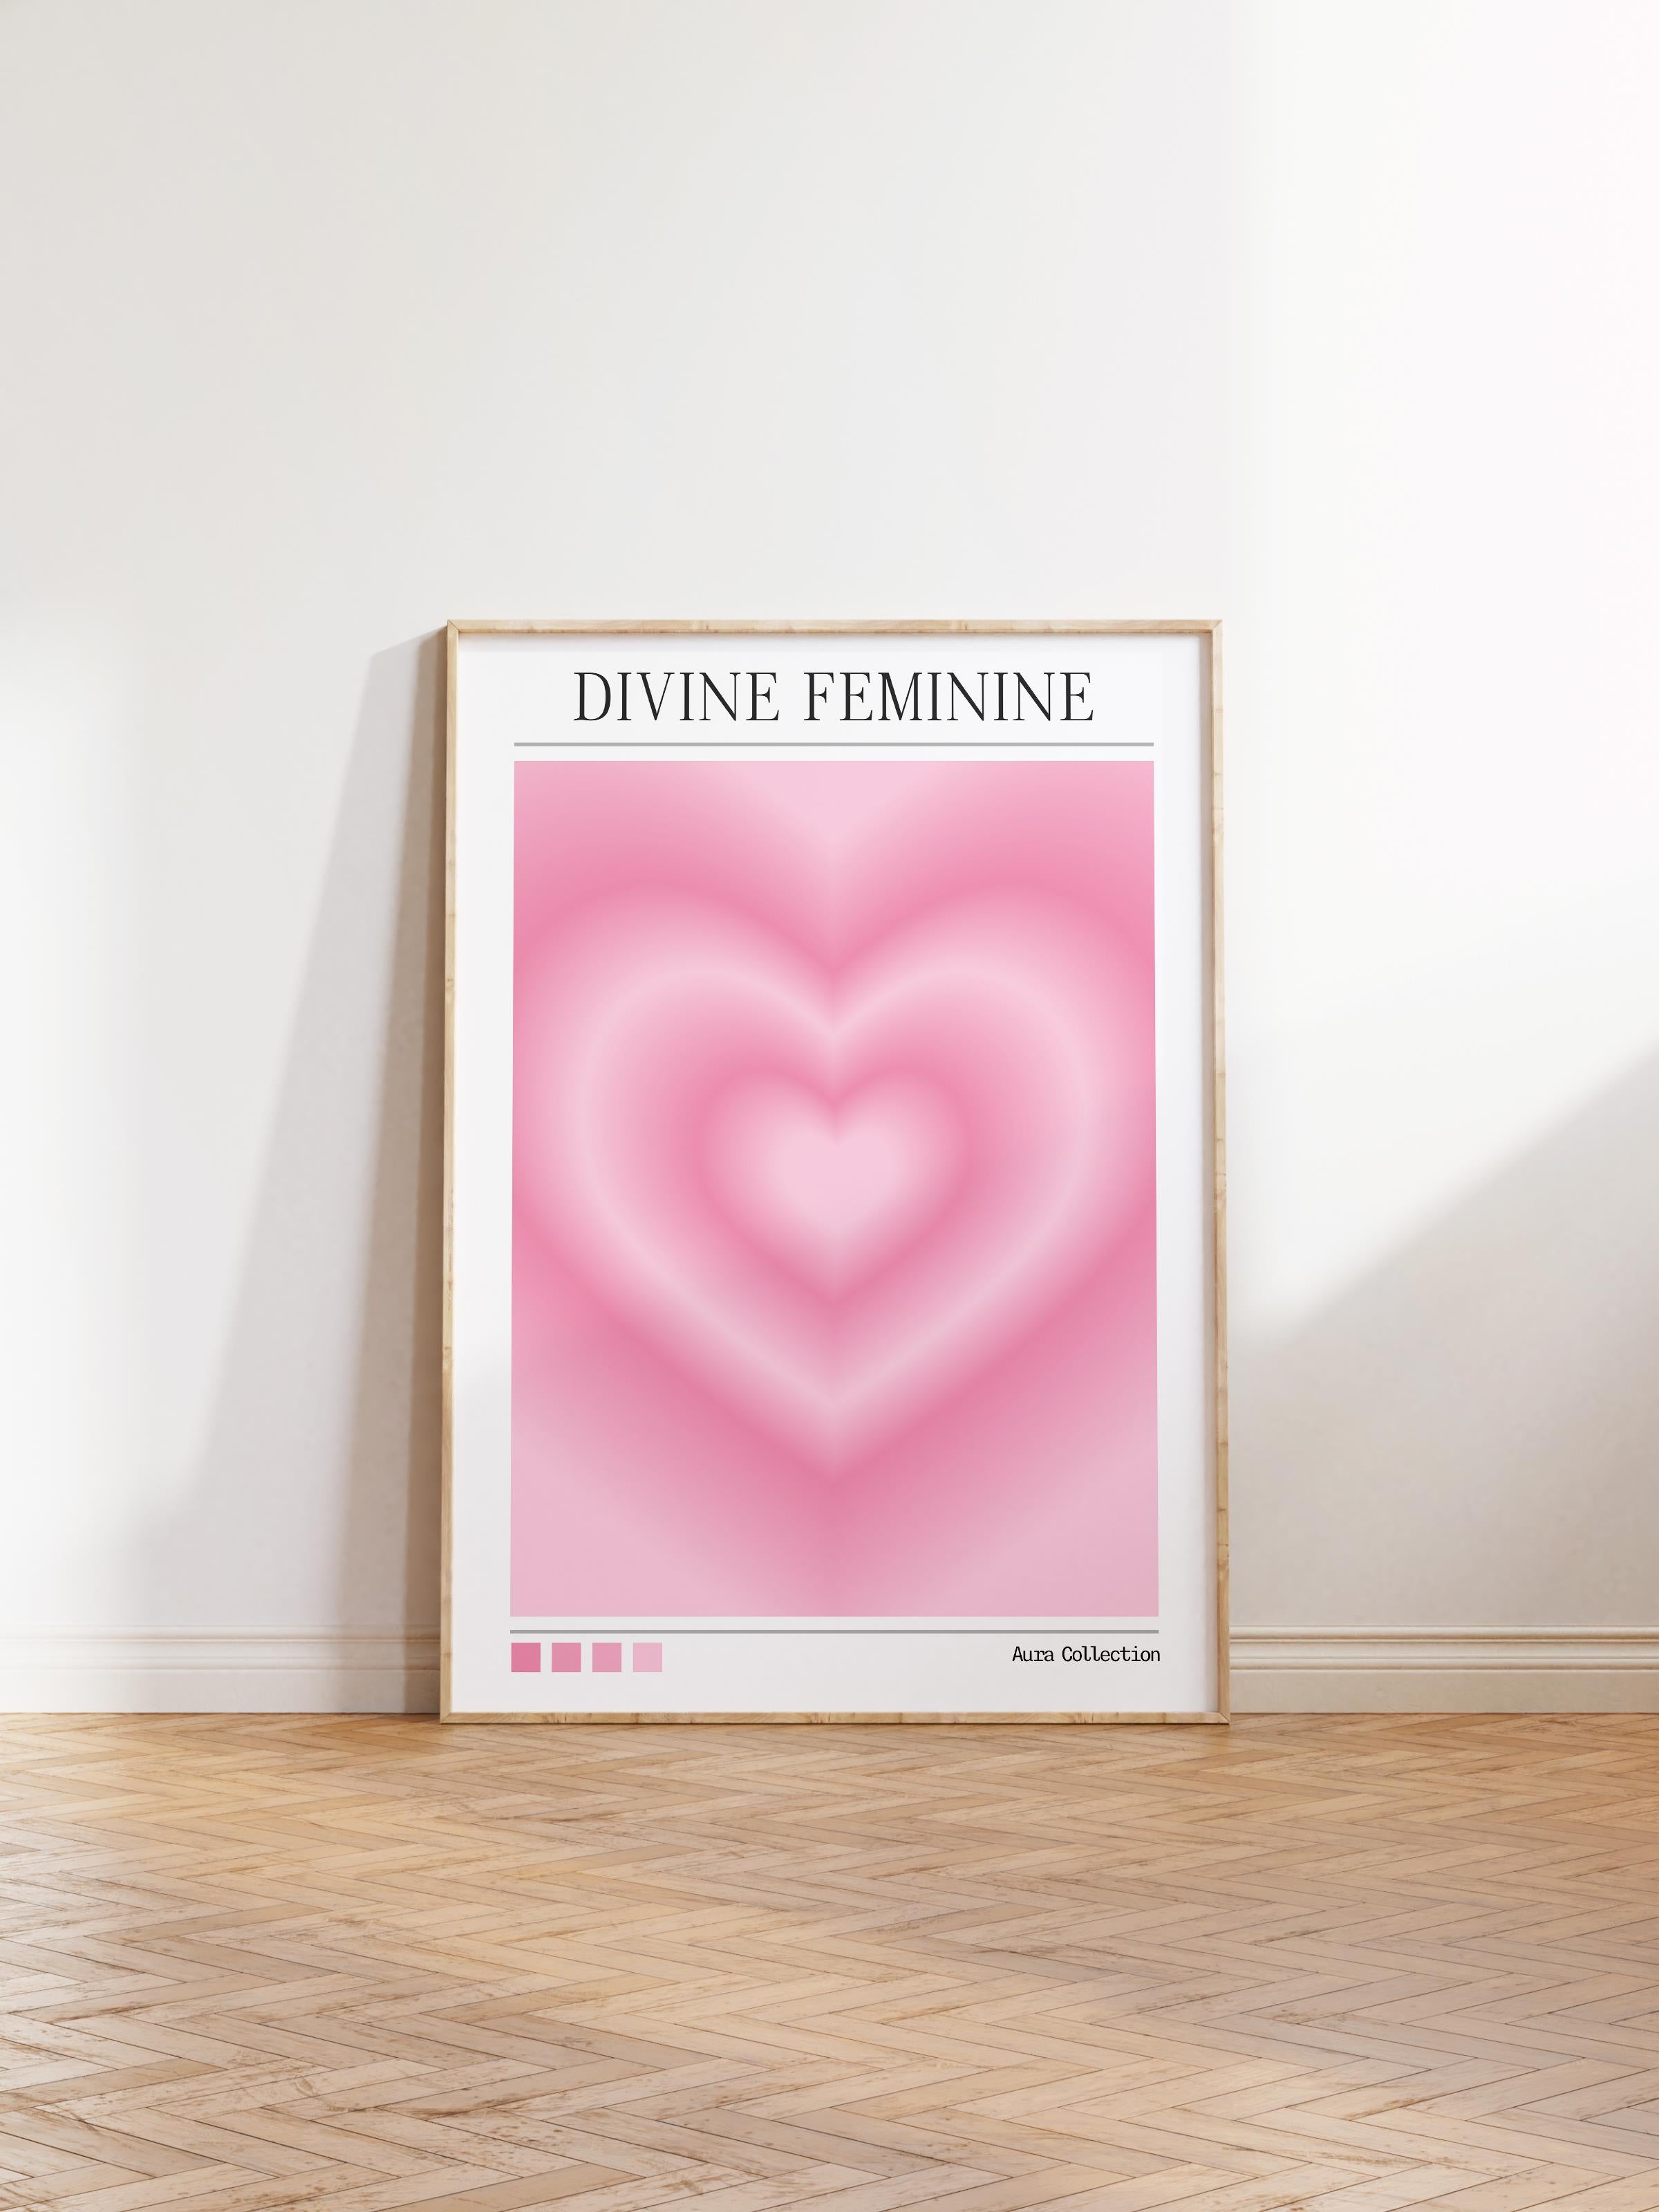 Çerçevesiz Poster, Aura Serisi NO:169 - Divine Feminine, Melek Numaraları, Renkli Poster